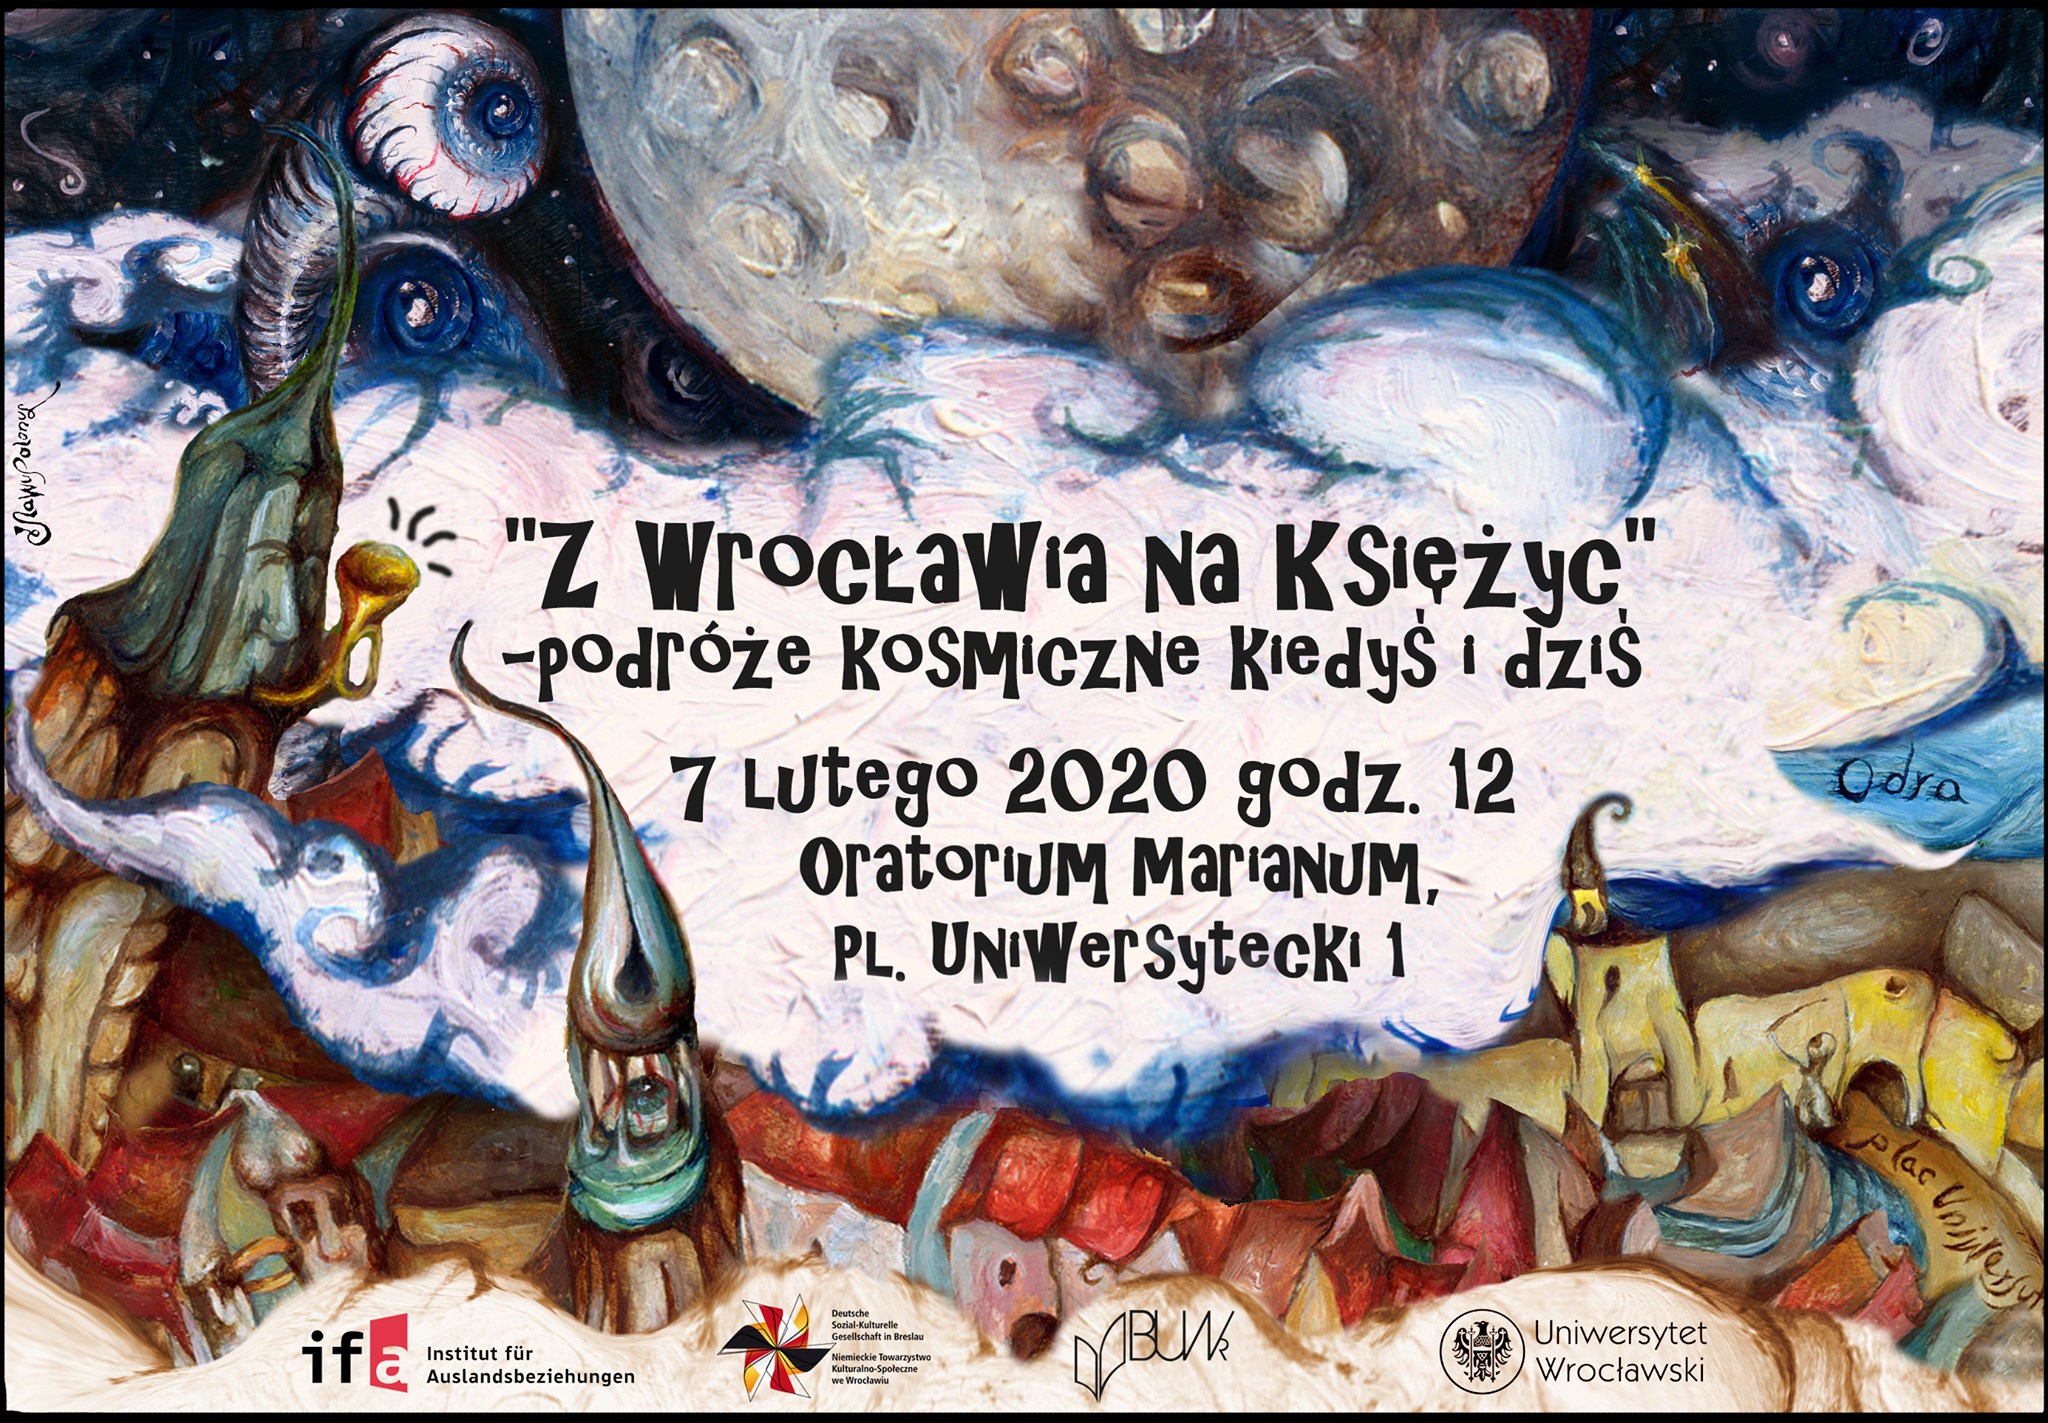 Z Wrocławia na Księżyc @ Oratorium Marianum